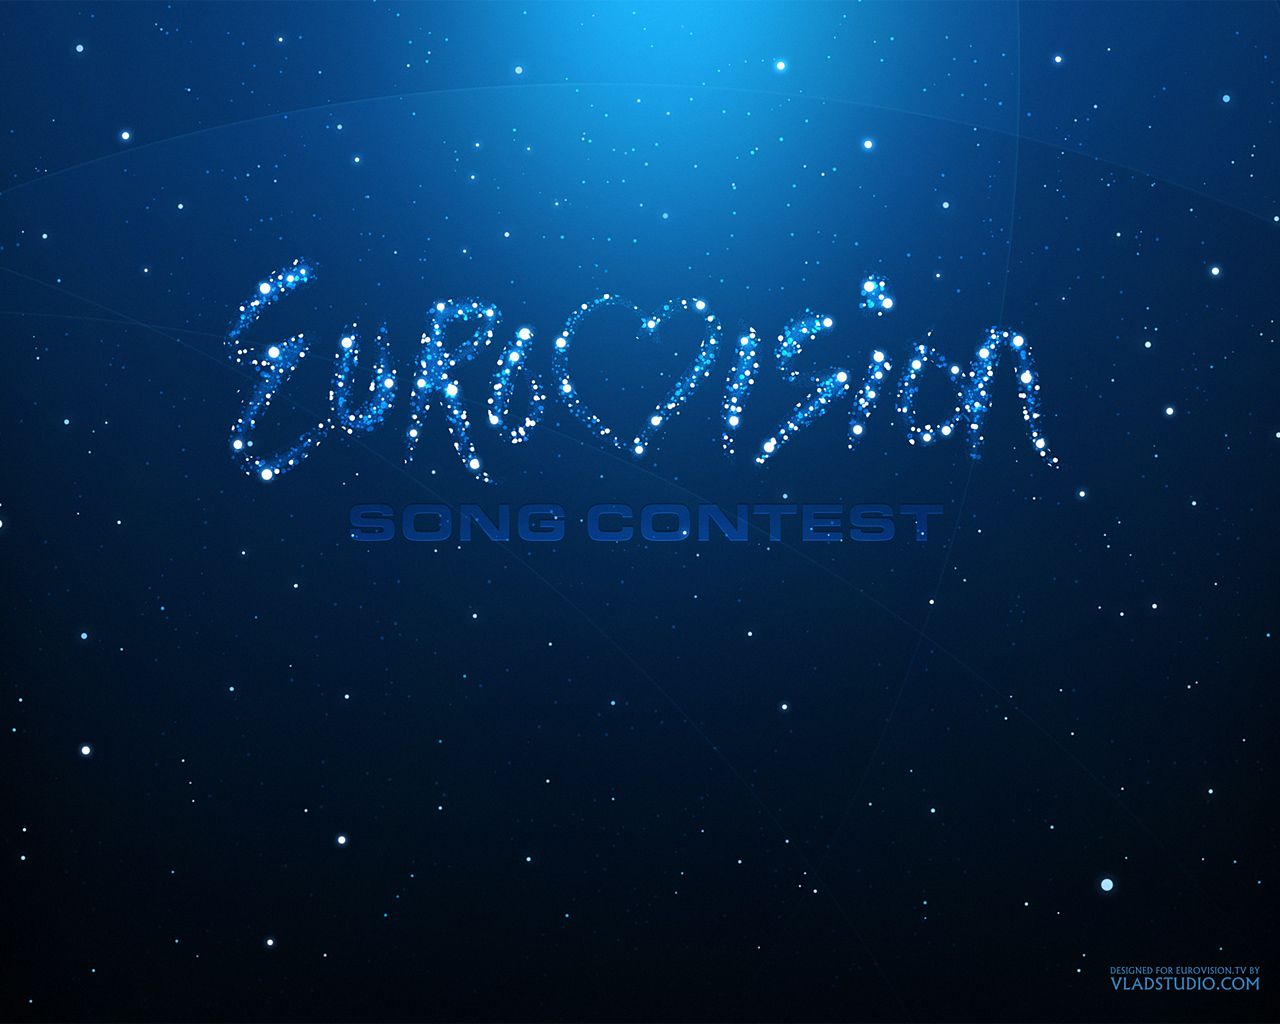 Eurovision Song Contest Wallpaper .fanpop.com